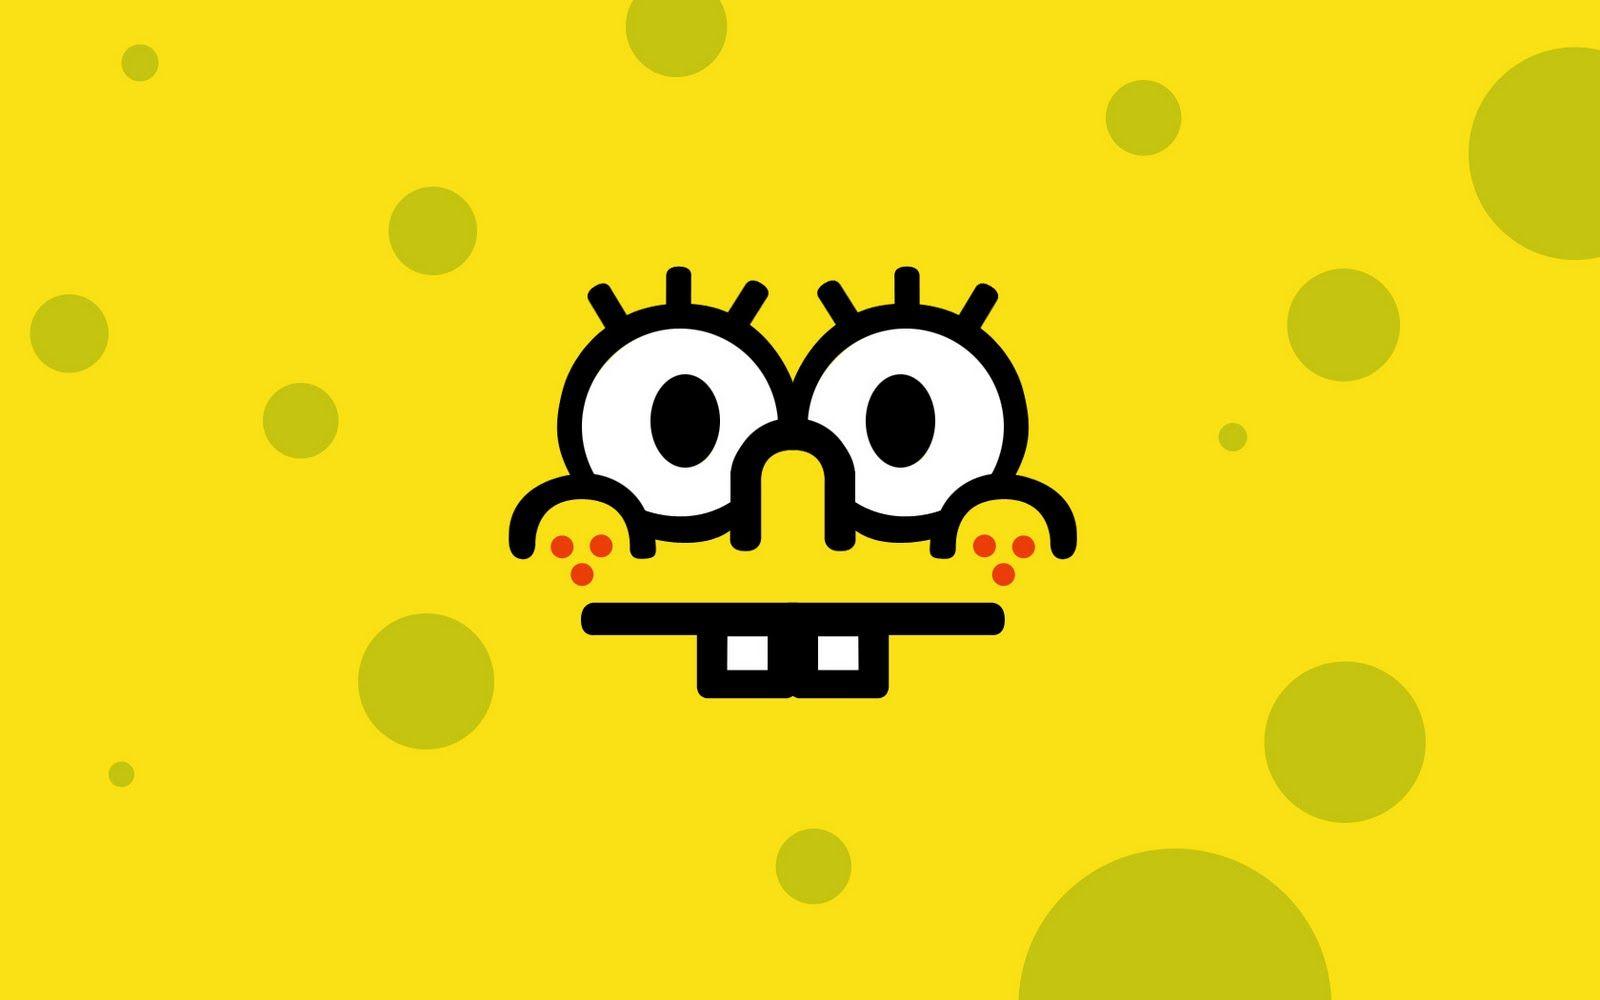 ijonkbojats: Funny SpongeBob Face HD Wallpaper \ Background